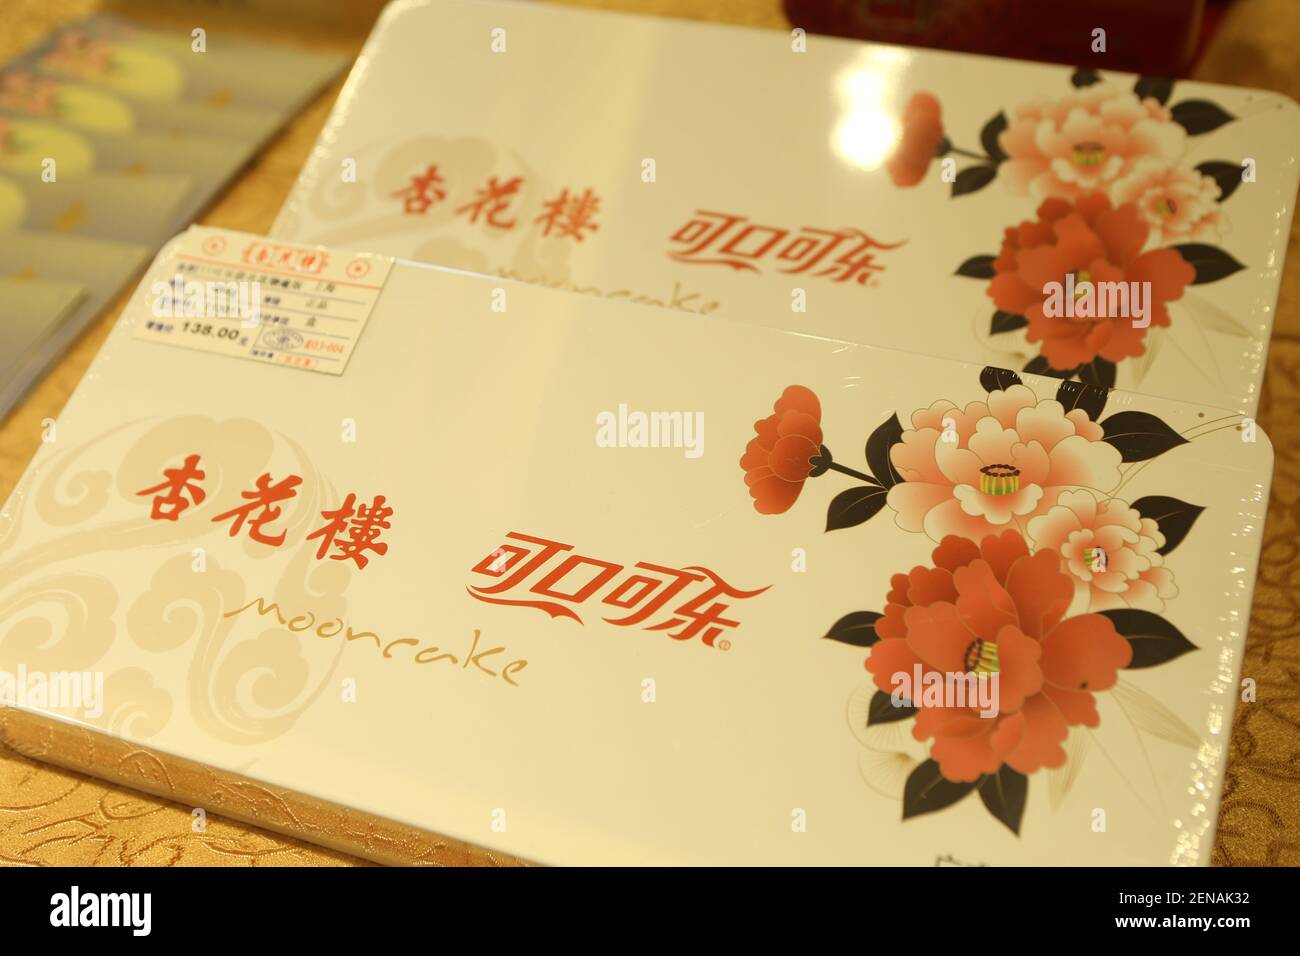 Die Co-Branding-Geschenkbox, bestehend aus Mooncake von Shanghai Xinghualou Food and Beverage Co., Ltd und Coke der Coca-Cola Company aus den Vereinigten Staaten, wird in Shanghai China am 14. Juli 2019 eingeführt. (Foto von Wang Yadong - Imaginechina/Sipa USA) Stockfoto